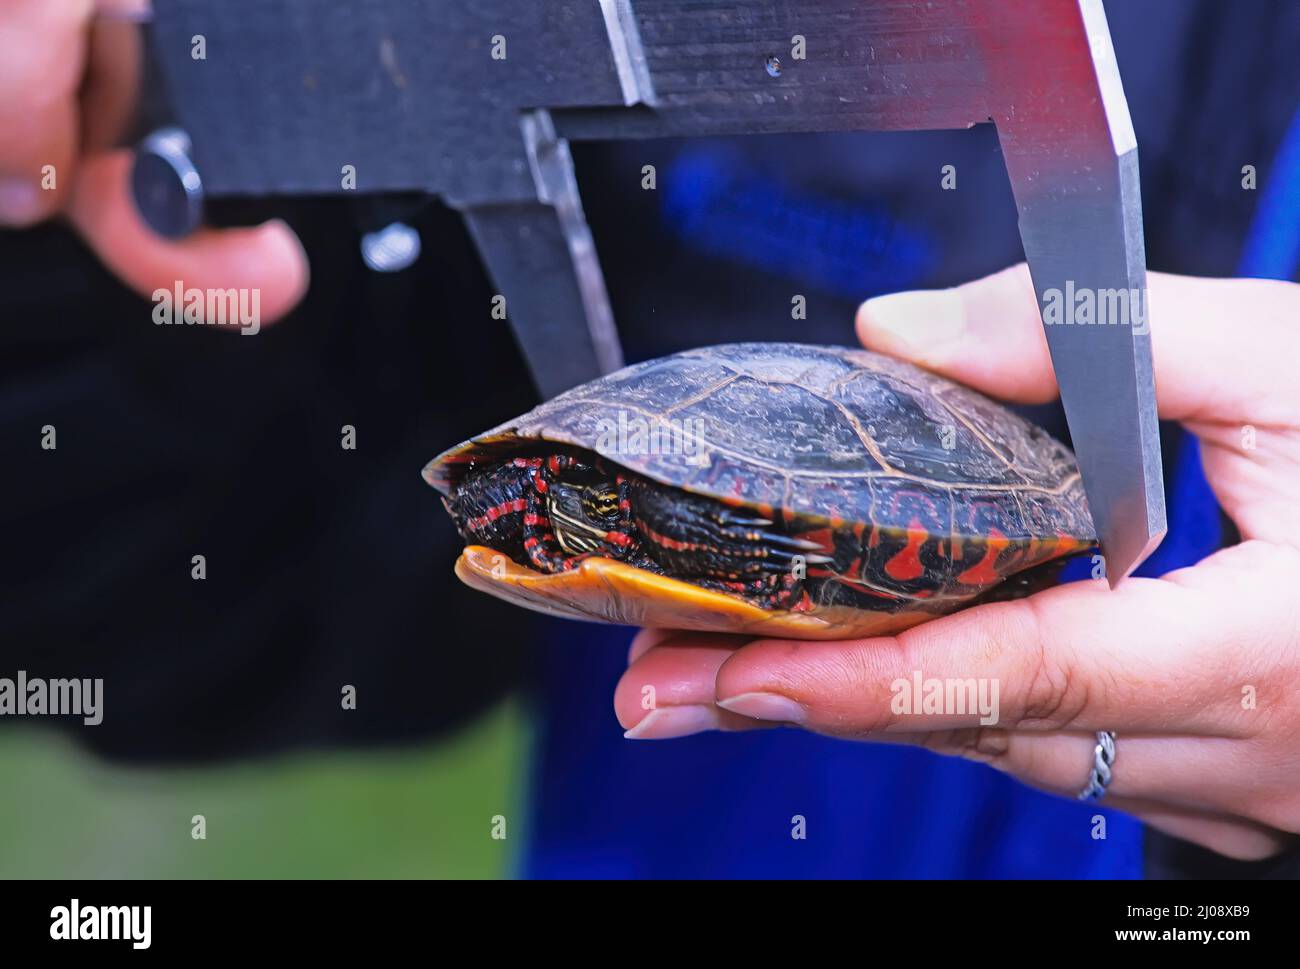 Biólogo que mide el caparazón de una tortuga pintada Foto de stock